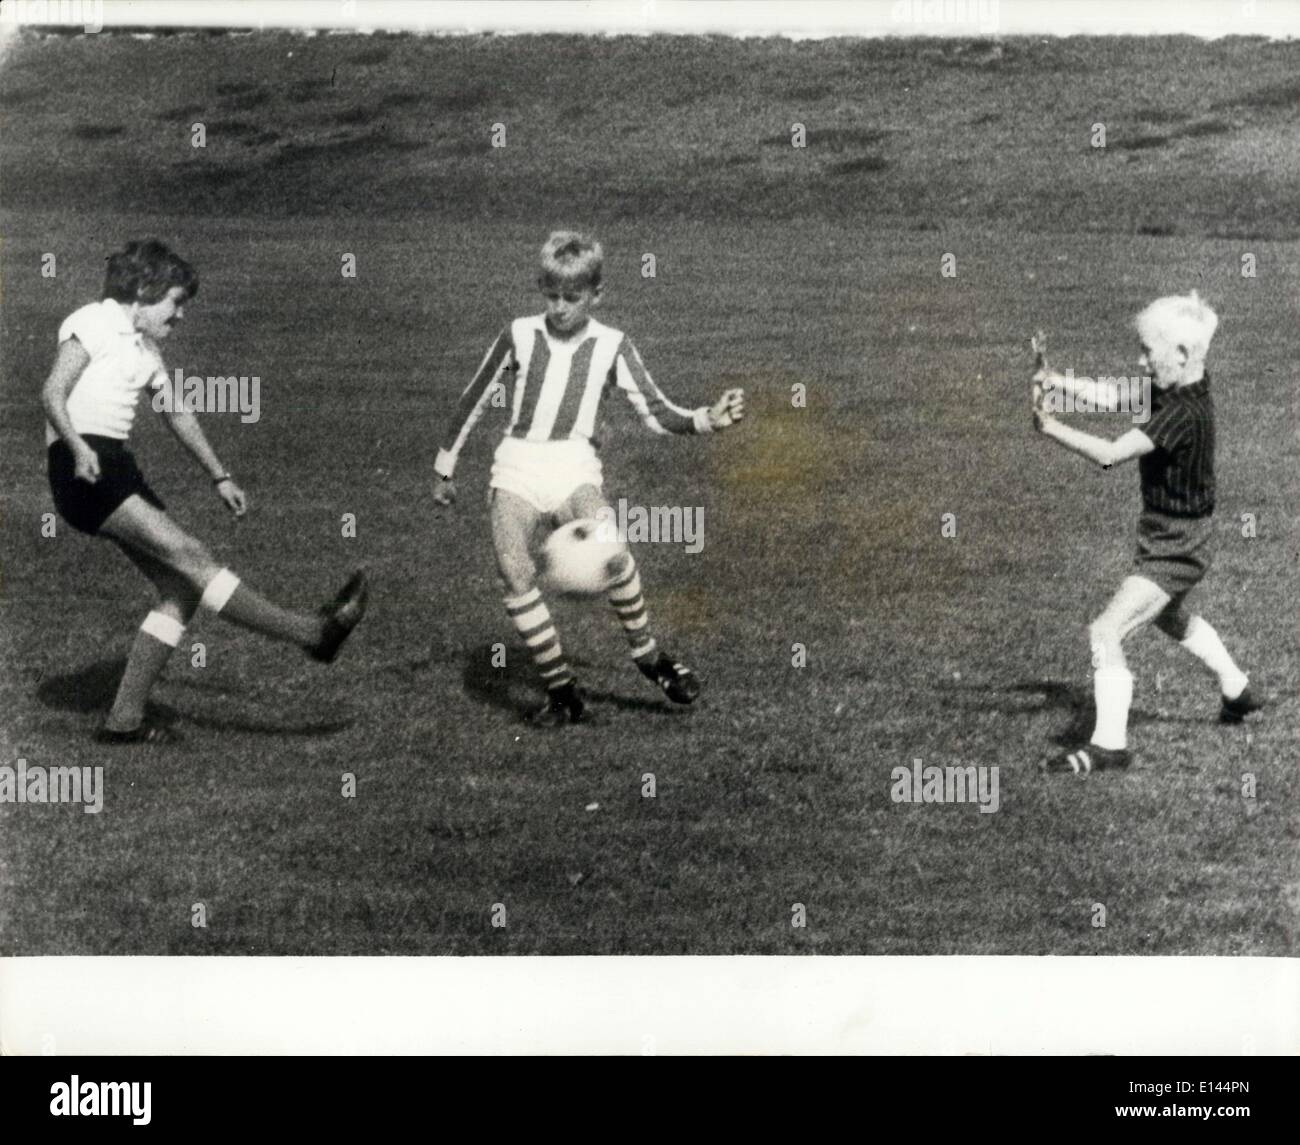 Avril 04, 2012 - elle est top Scorer - une équipe de football pour les garçons : 11-year-old Ulla Moerk Christensen, de petits villages des Galten, Jutland, Danemark, est très friand de jouer au football - et est l'avant centre pour Ballelups Galten équipe garçons, pour qui elle a marqué 14 buts en quatre matchs. Avant un match, les garçons en arrière, l'équipe adverse est moqué d'elle - mais après le jeu qu'ils objet car il y a une fille dans l'équipe - une fille qui connaît le chemin de but. Photo montre Ulla Moerk Christensen (à gauche) prend un coup, tout en jouant dans l'équipe garçons. Banque D'Images